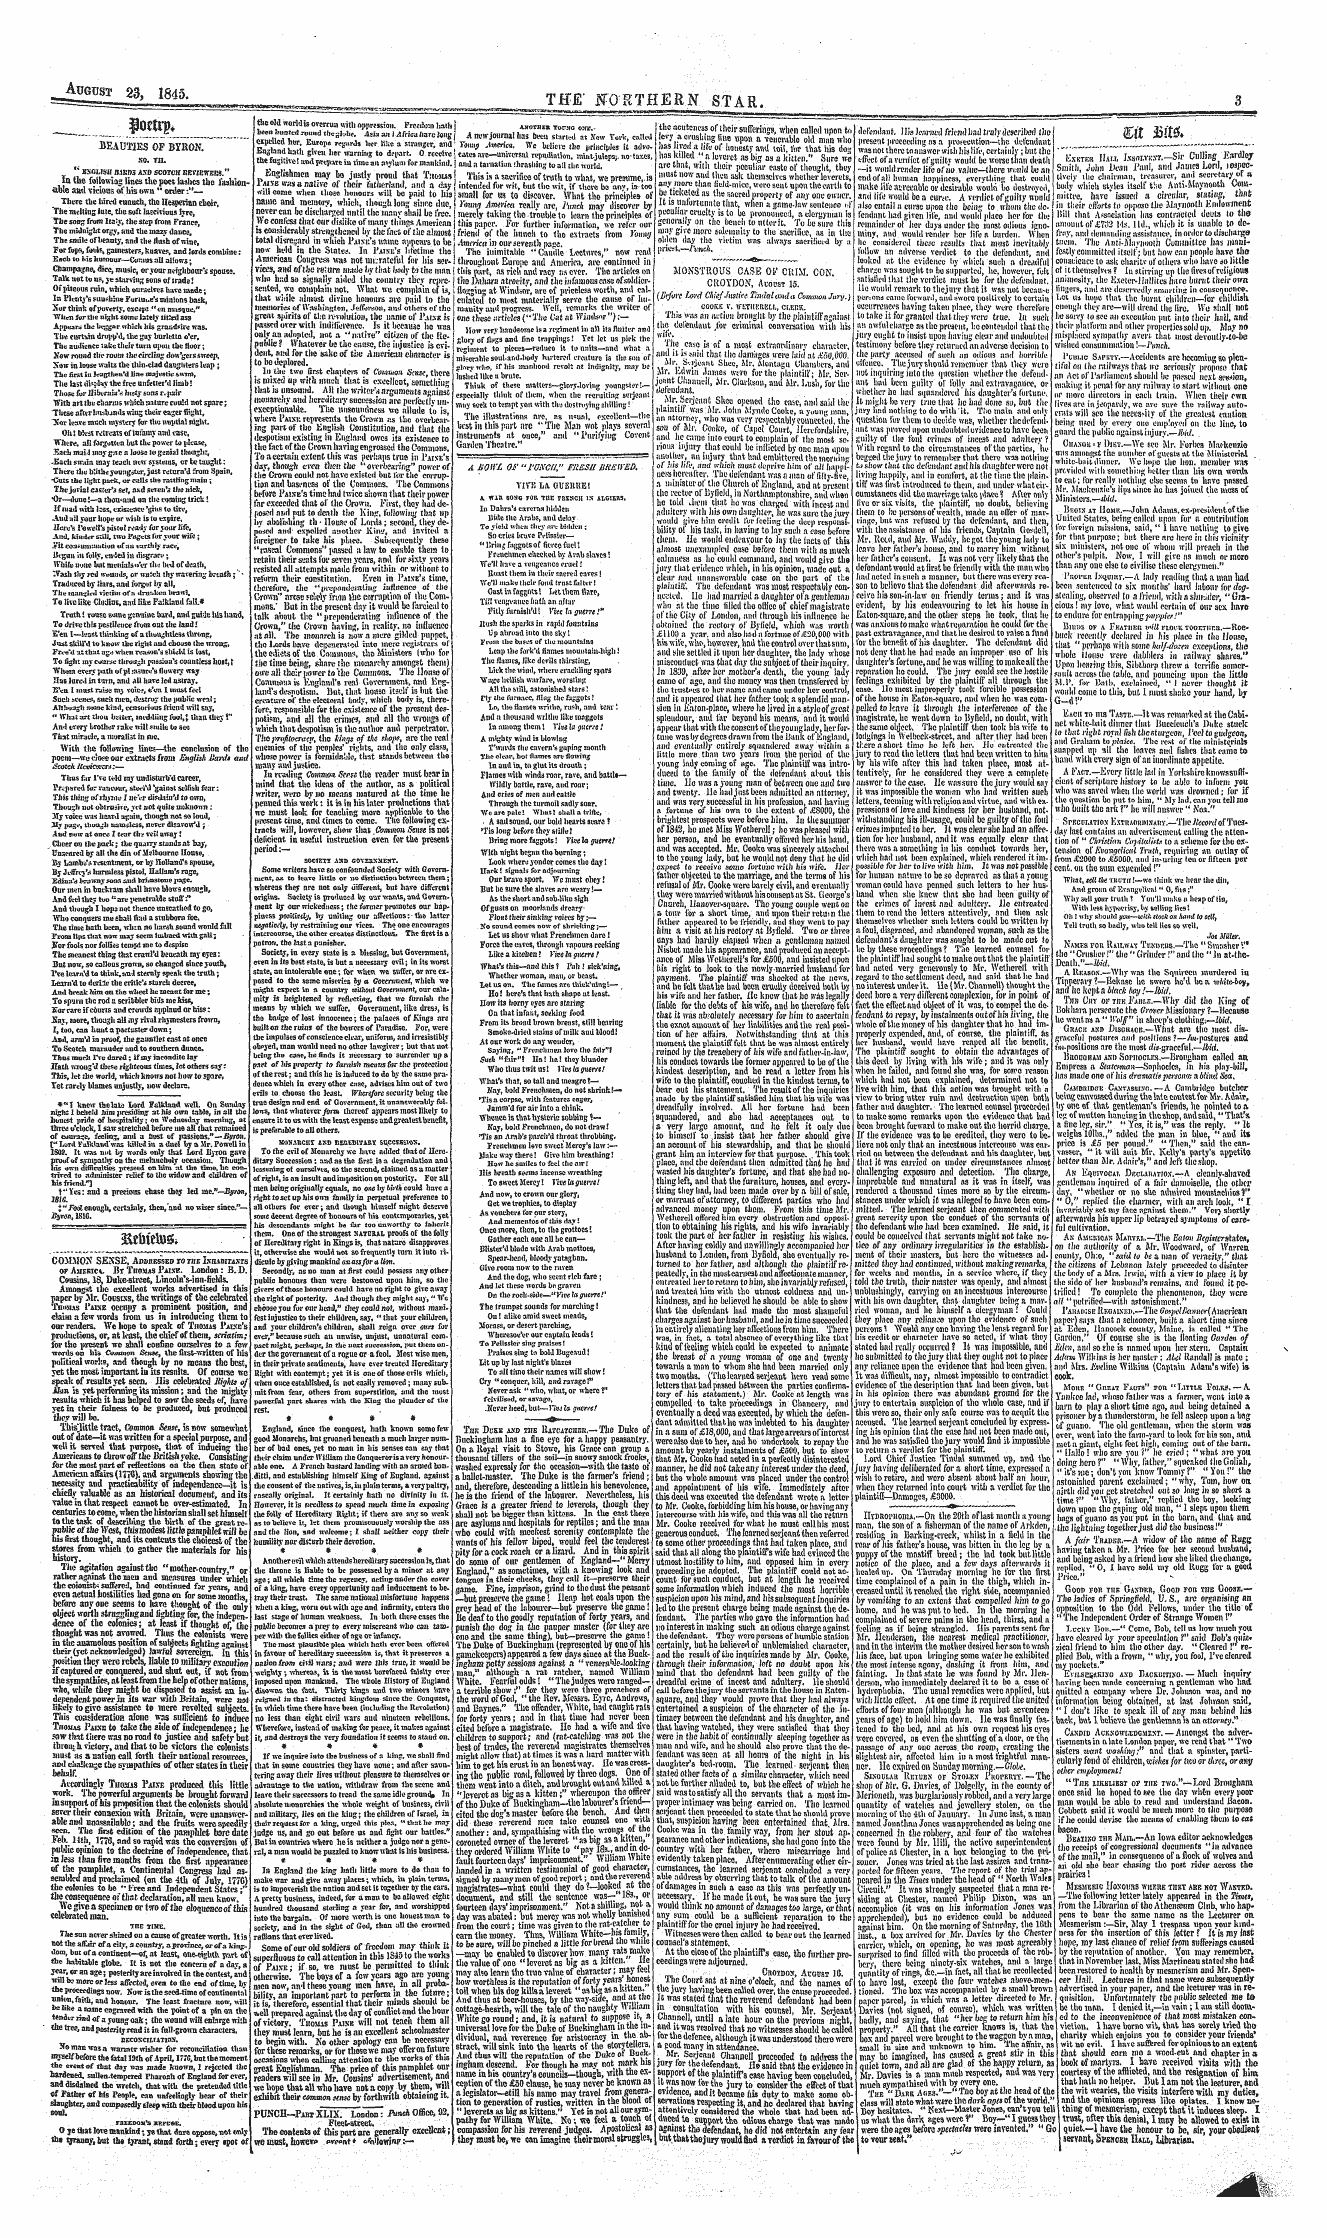 Northern Star (1837-1852): jS F Y, 4th edition - Exktbb Hall Jxm.Vkst.Sir Culling Eardlcy...